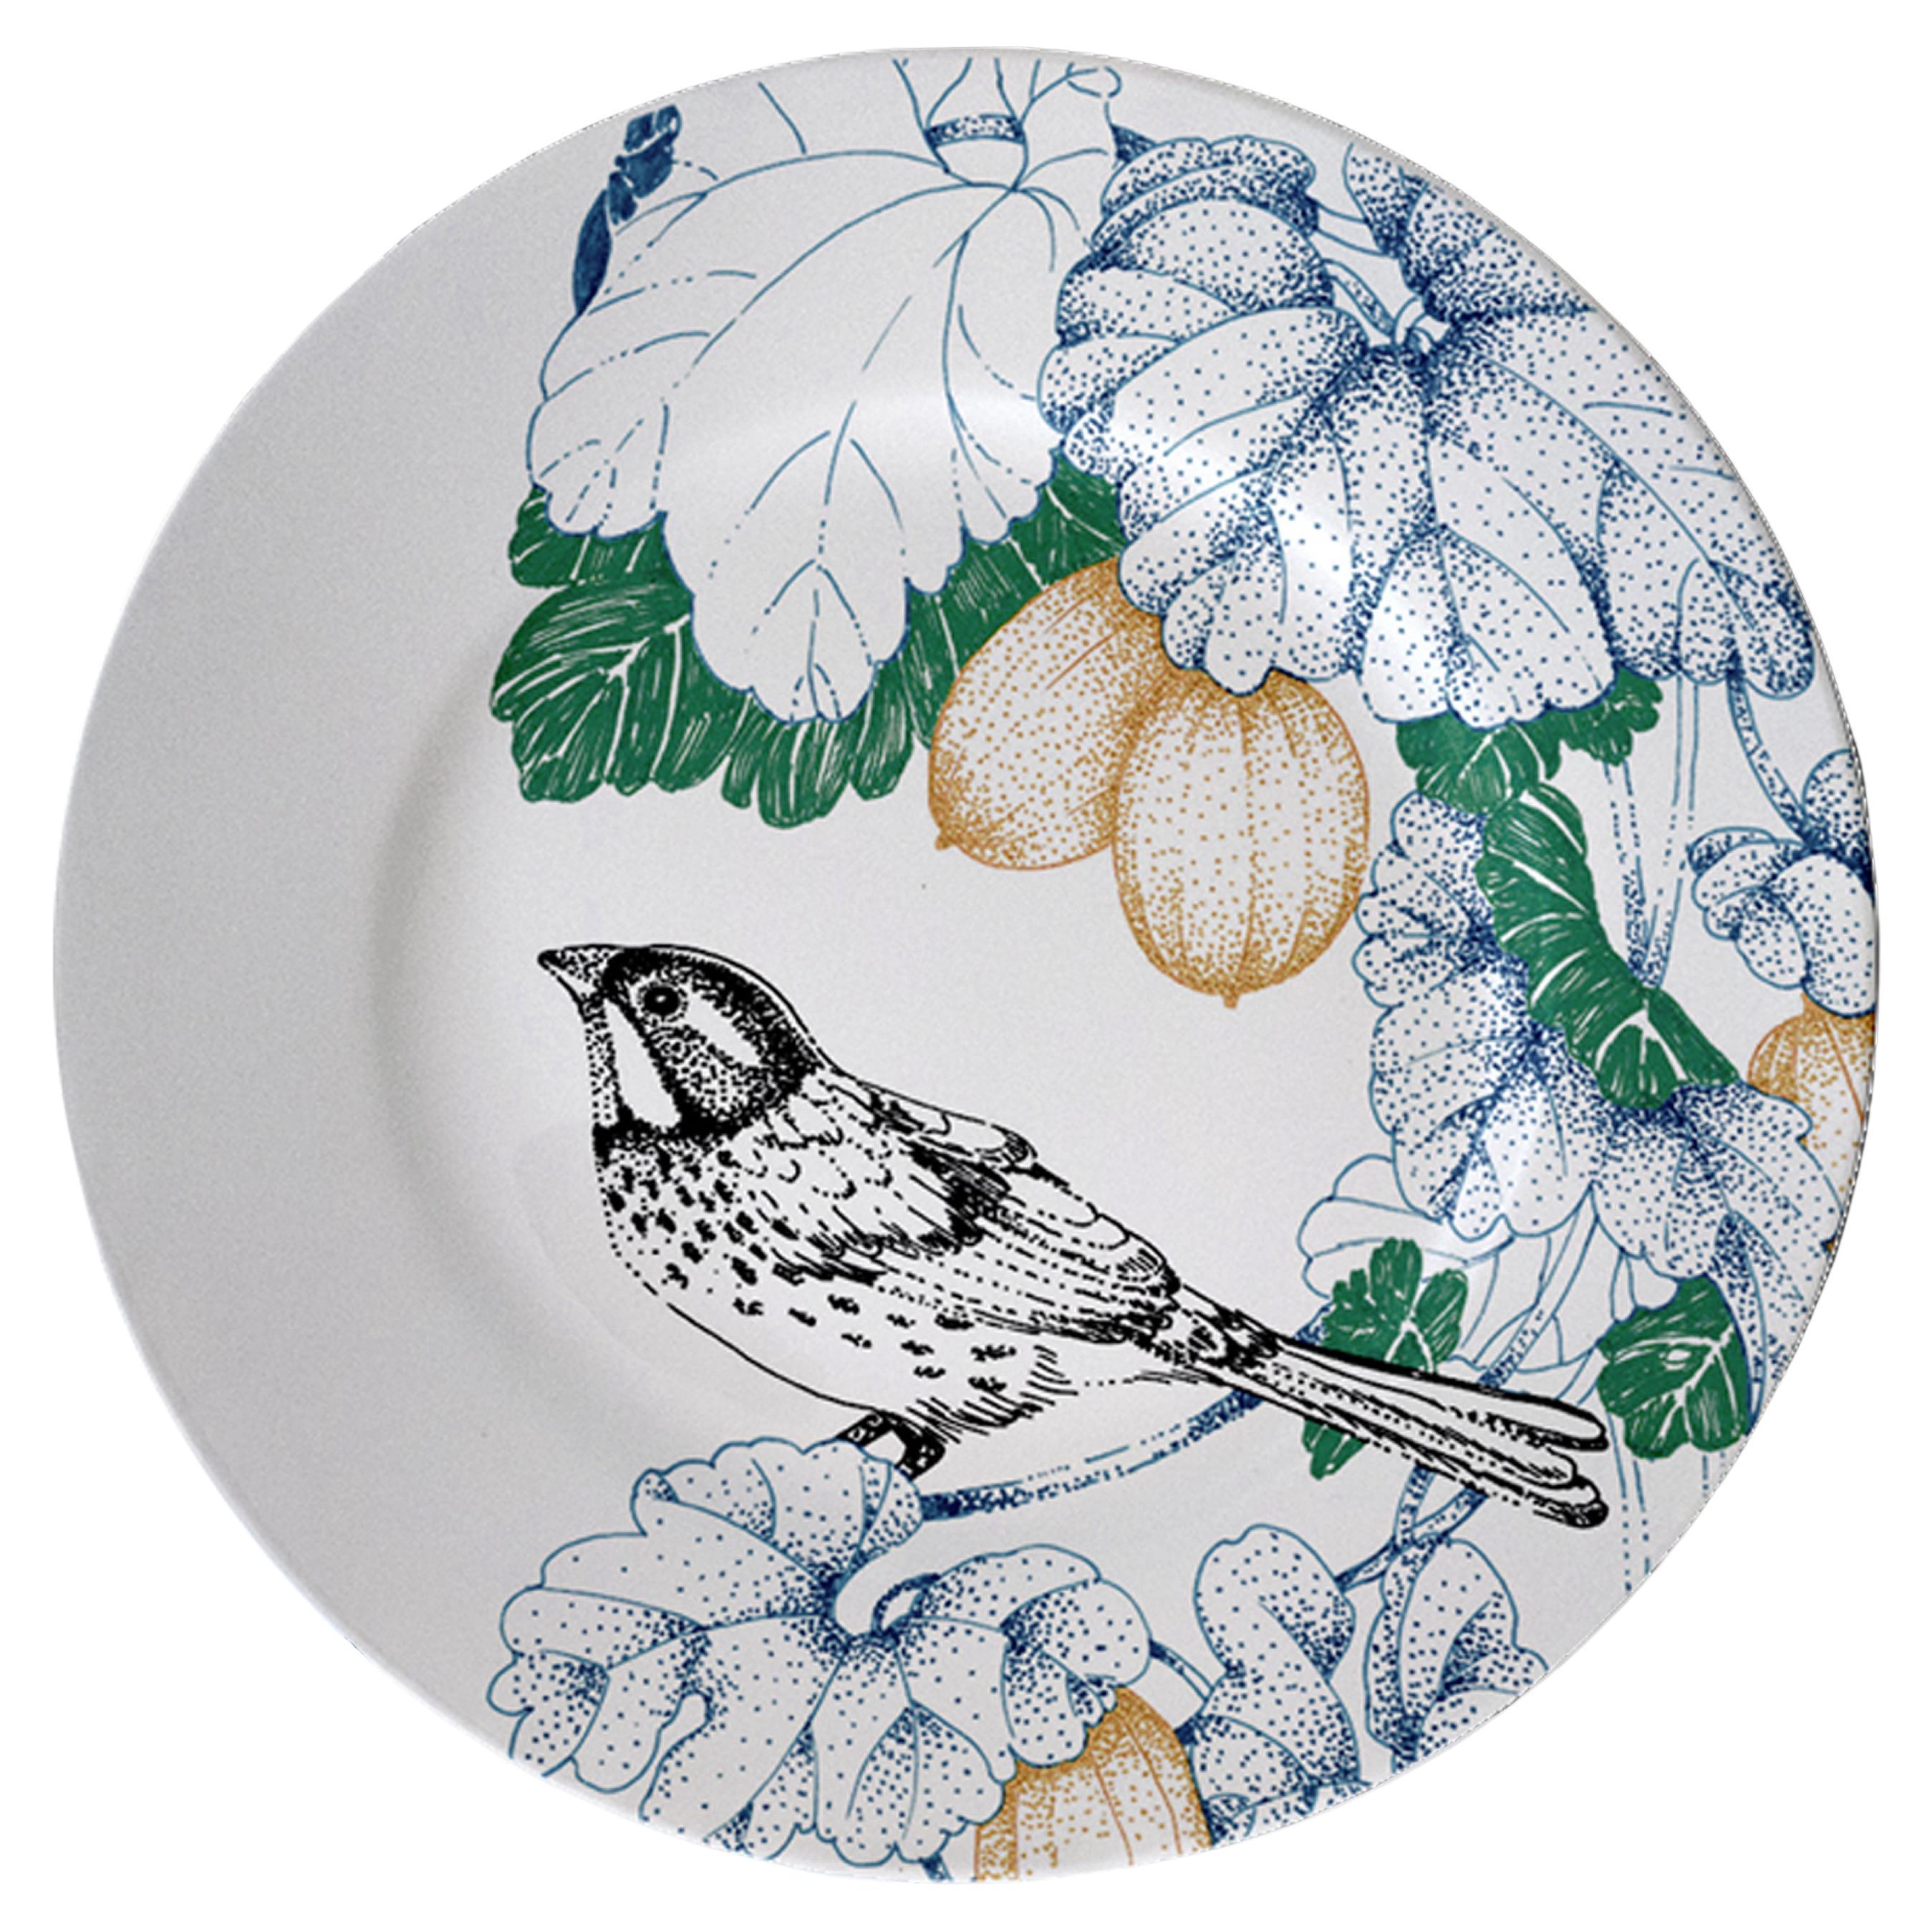 Bird Song, assiette à pain contemporaine en porcelaine avec oiseaux et fleurs